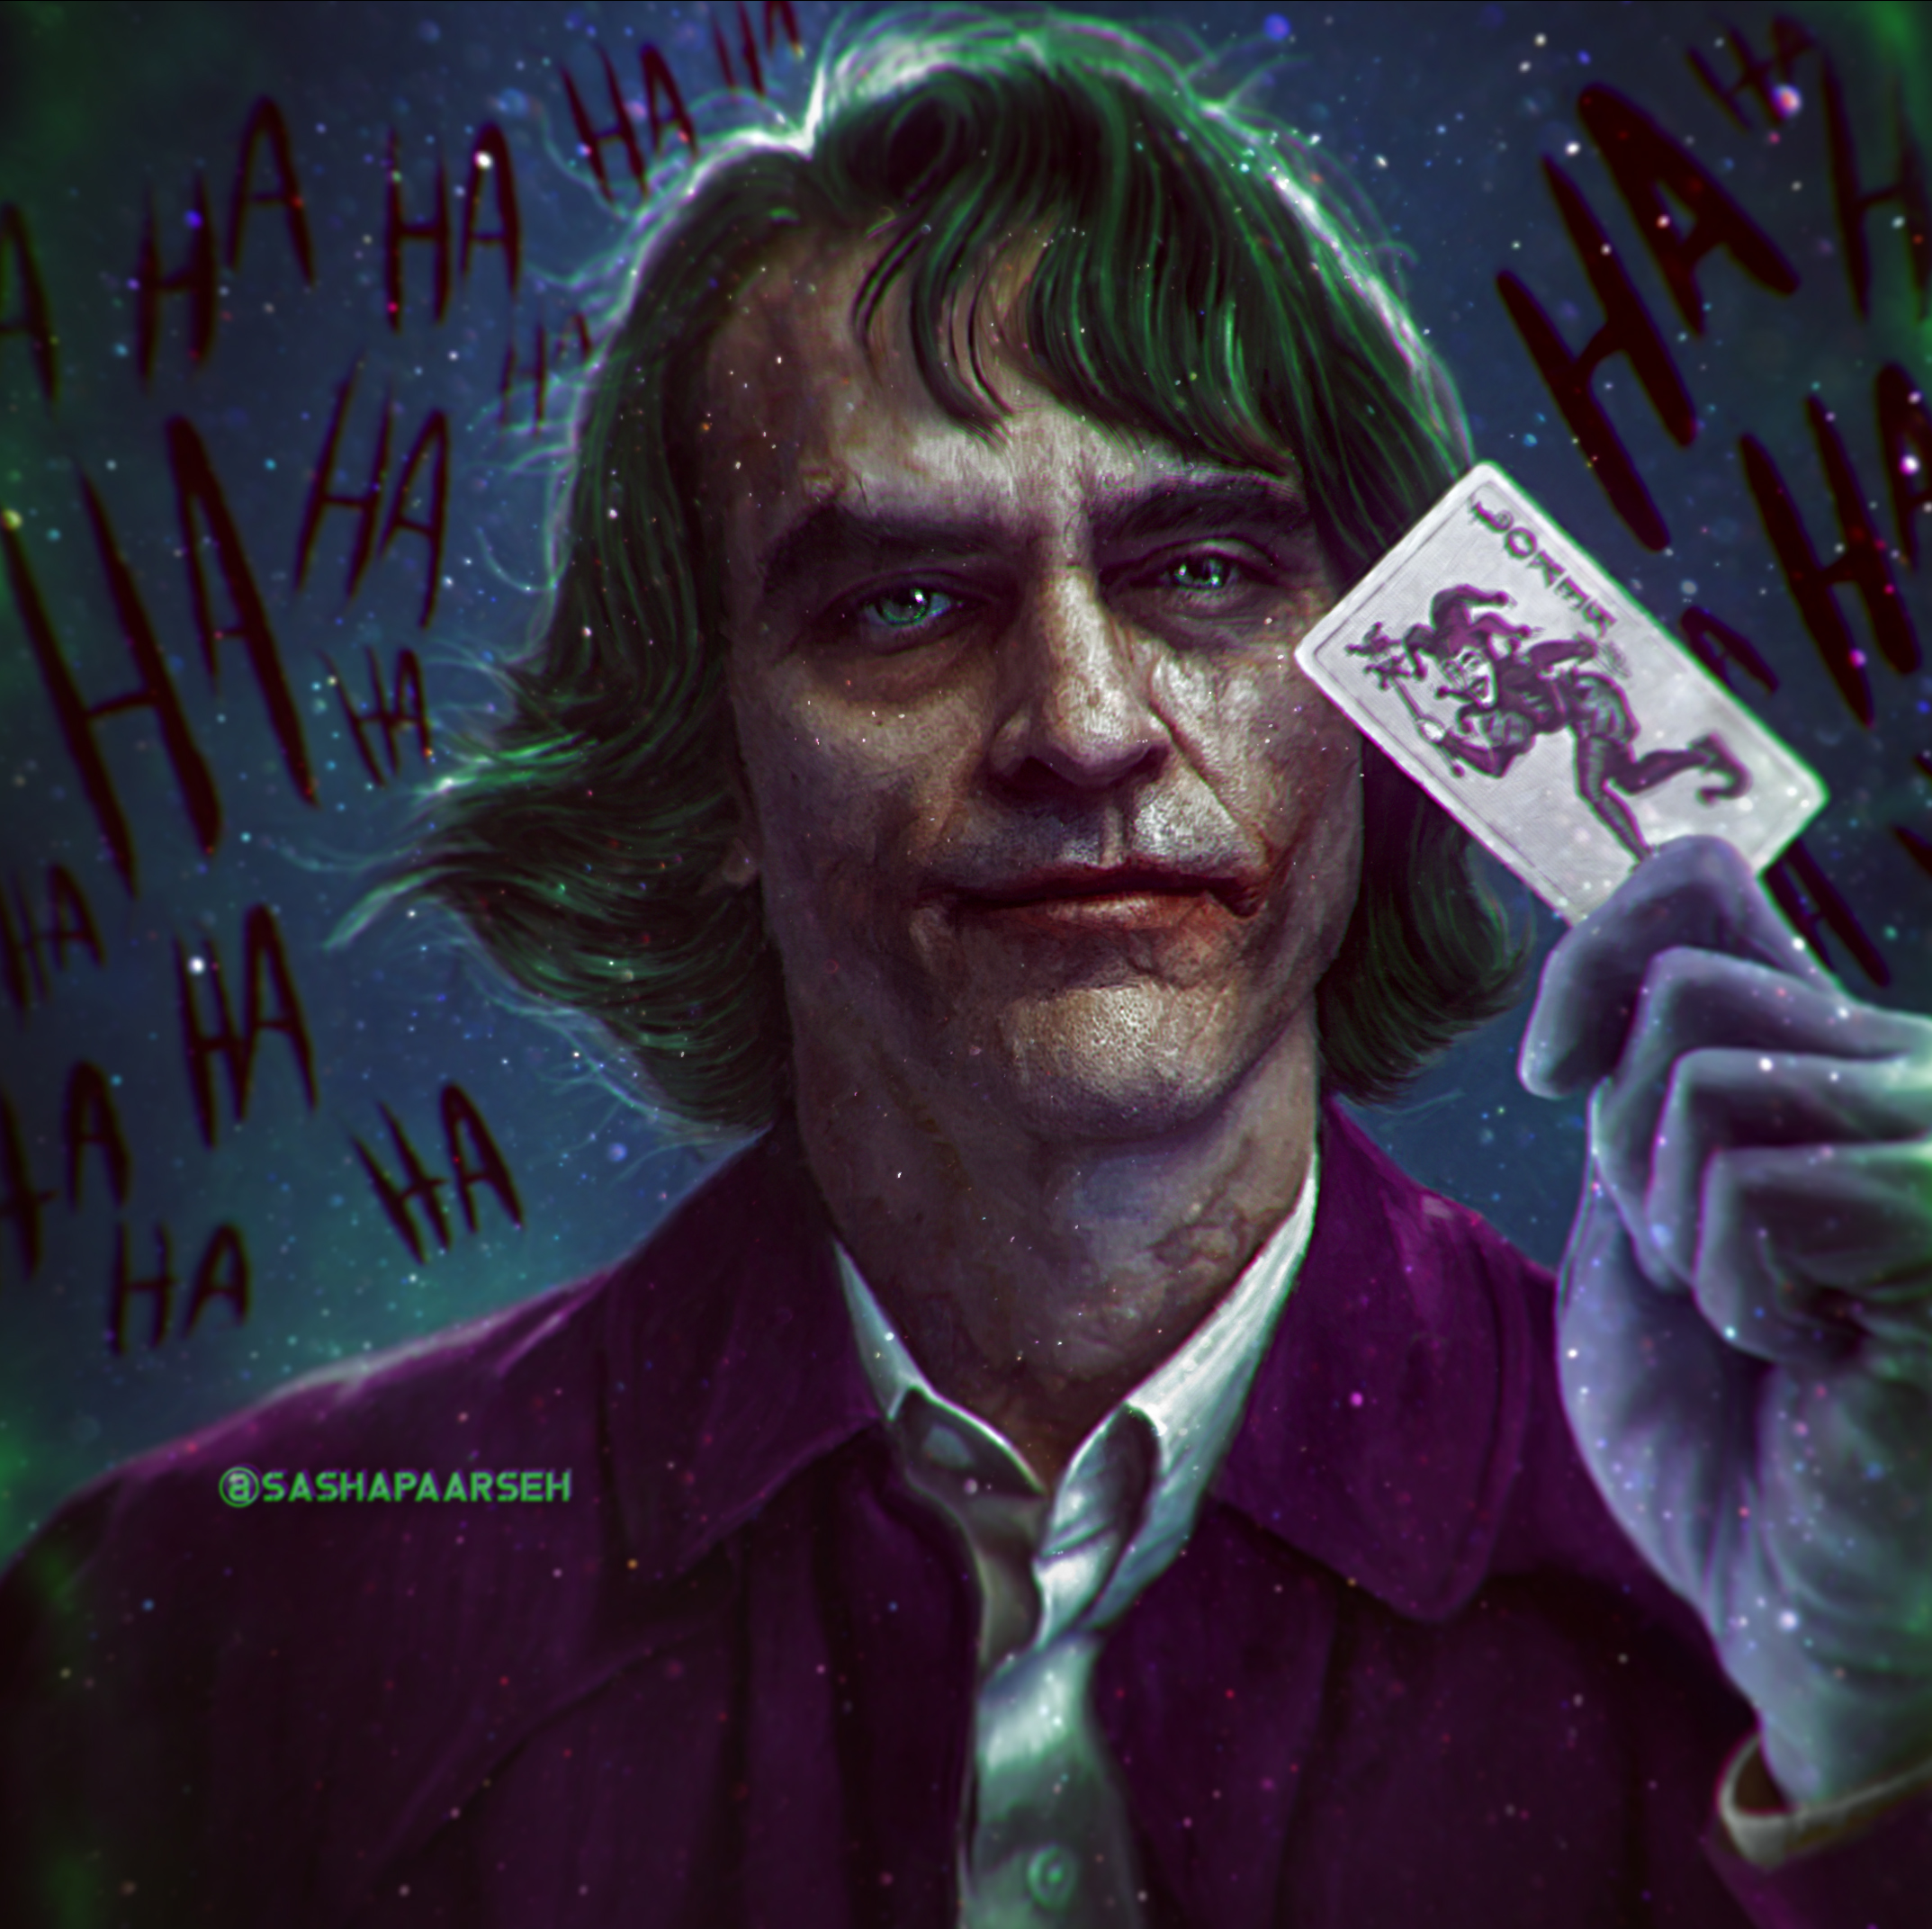 Joker By @SashaPaarseh by sashapaarseh on DeviantArt